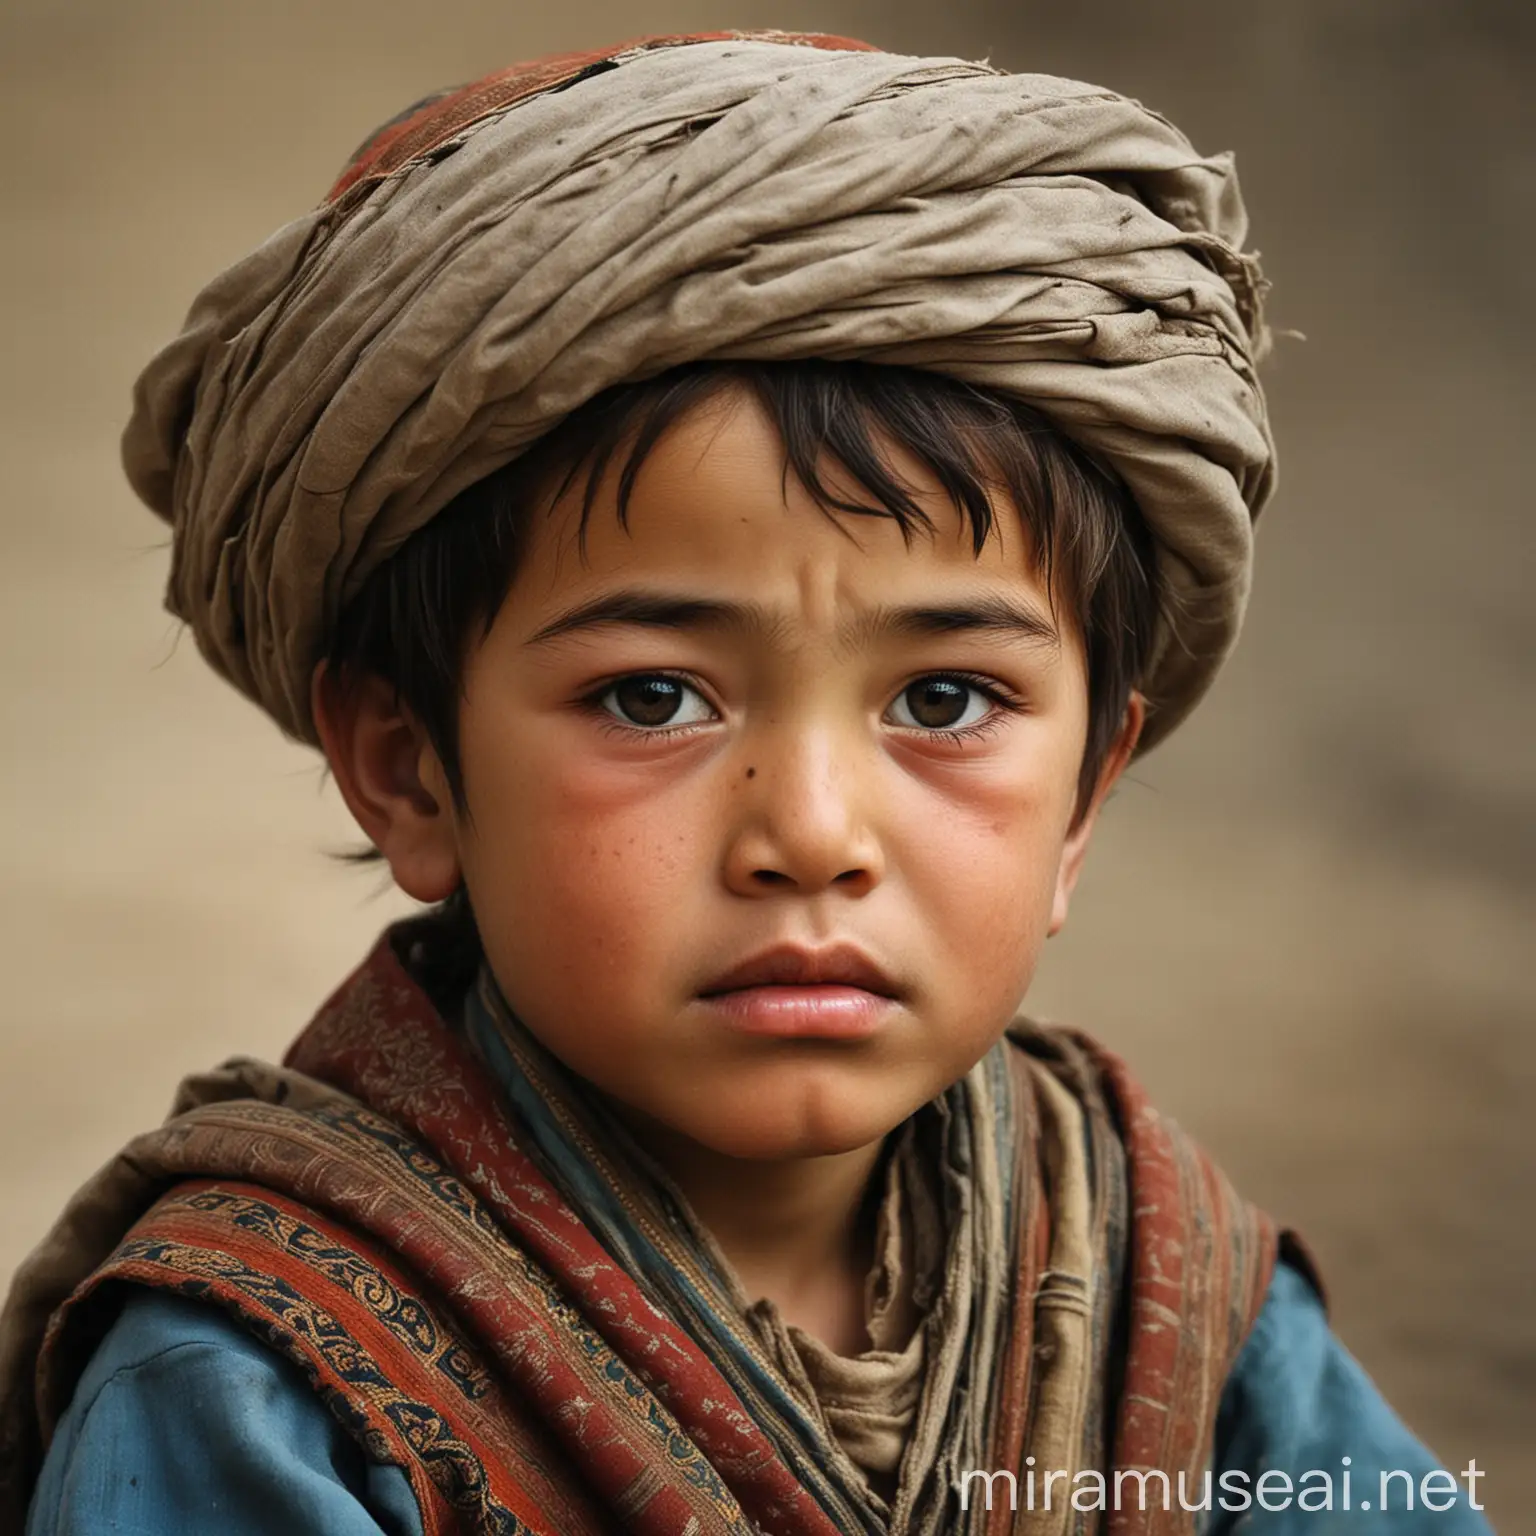 нищий маленький мальчик среднеазиатский, времен Амира темура, 